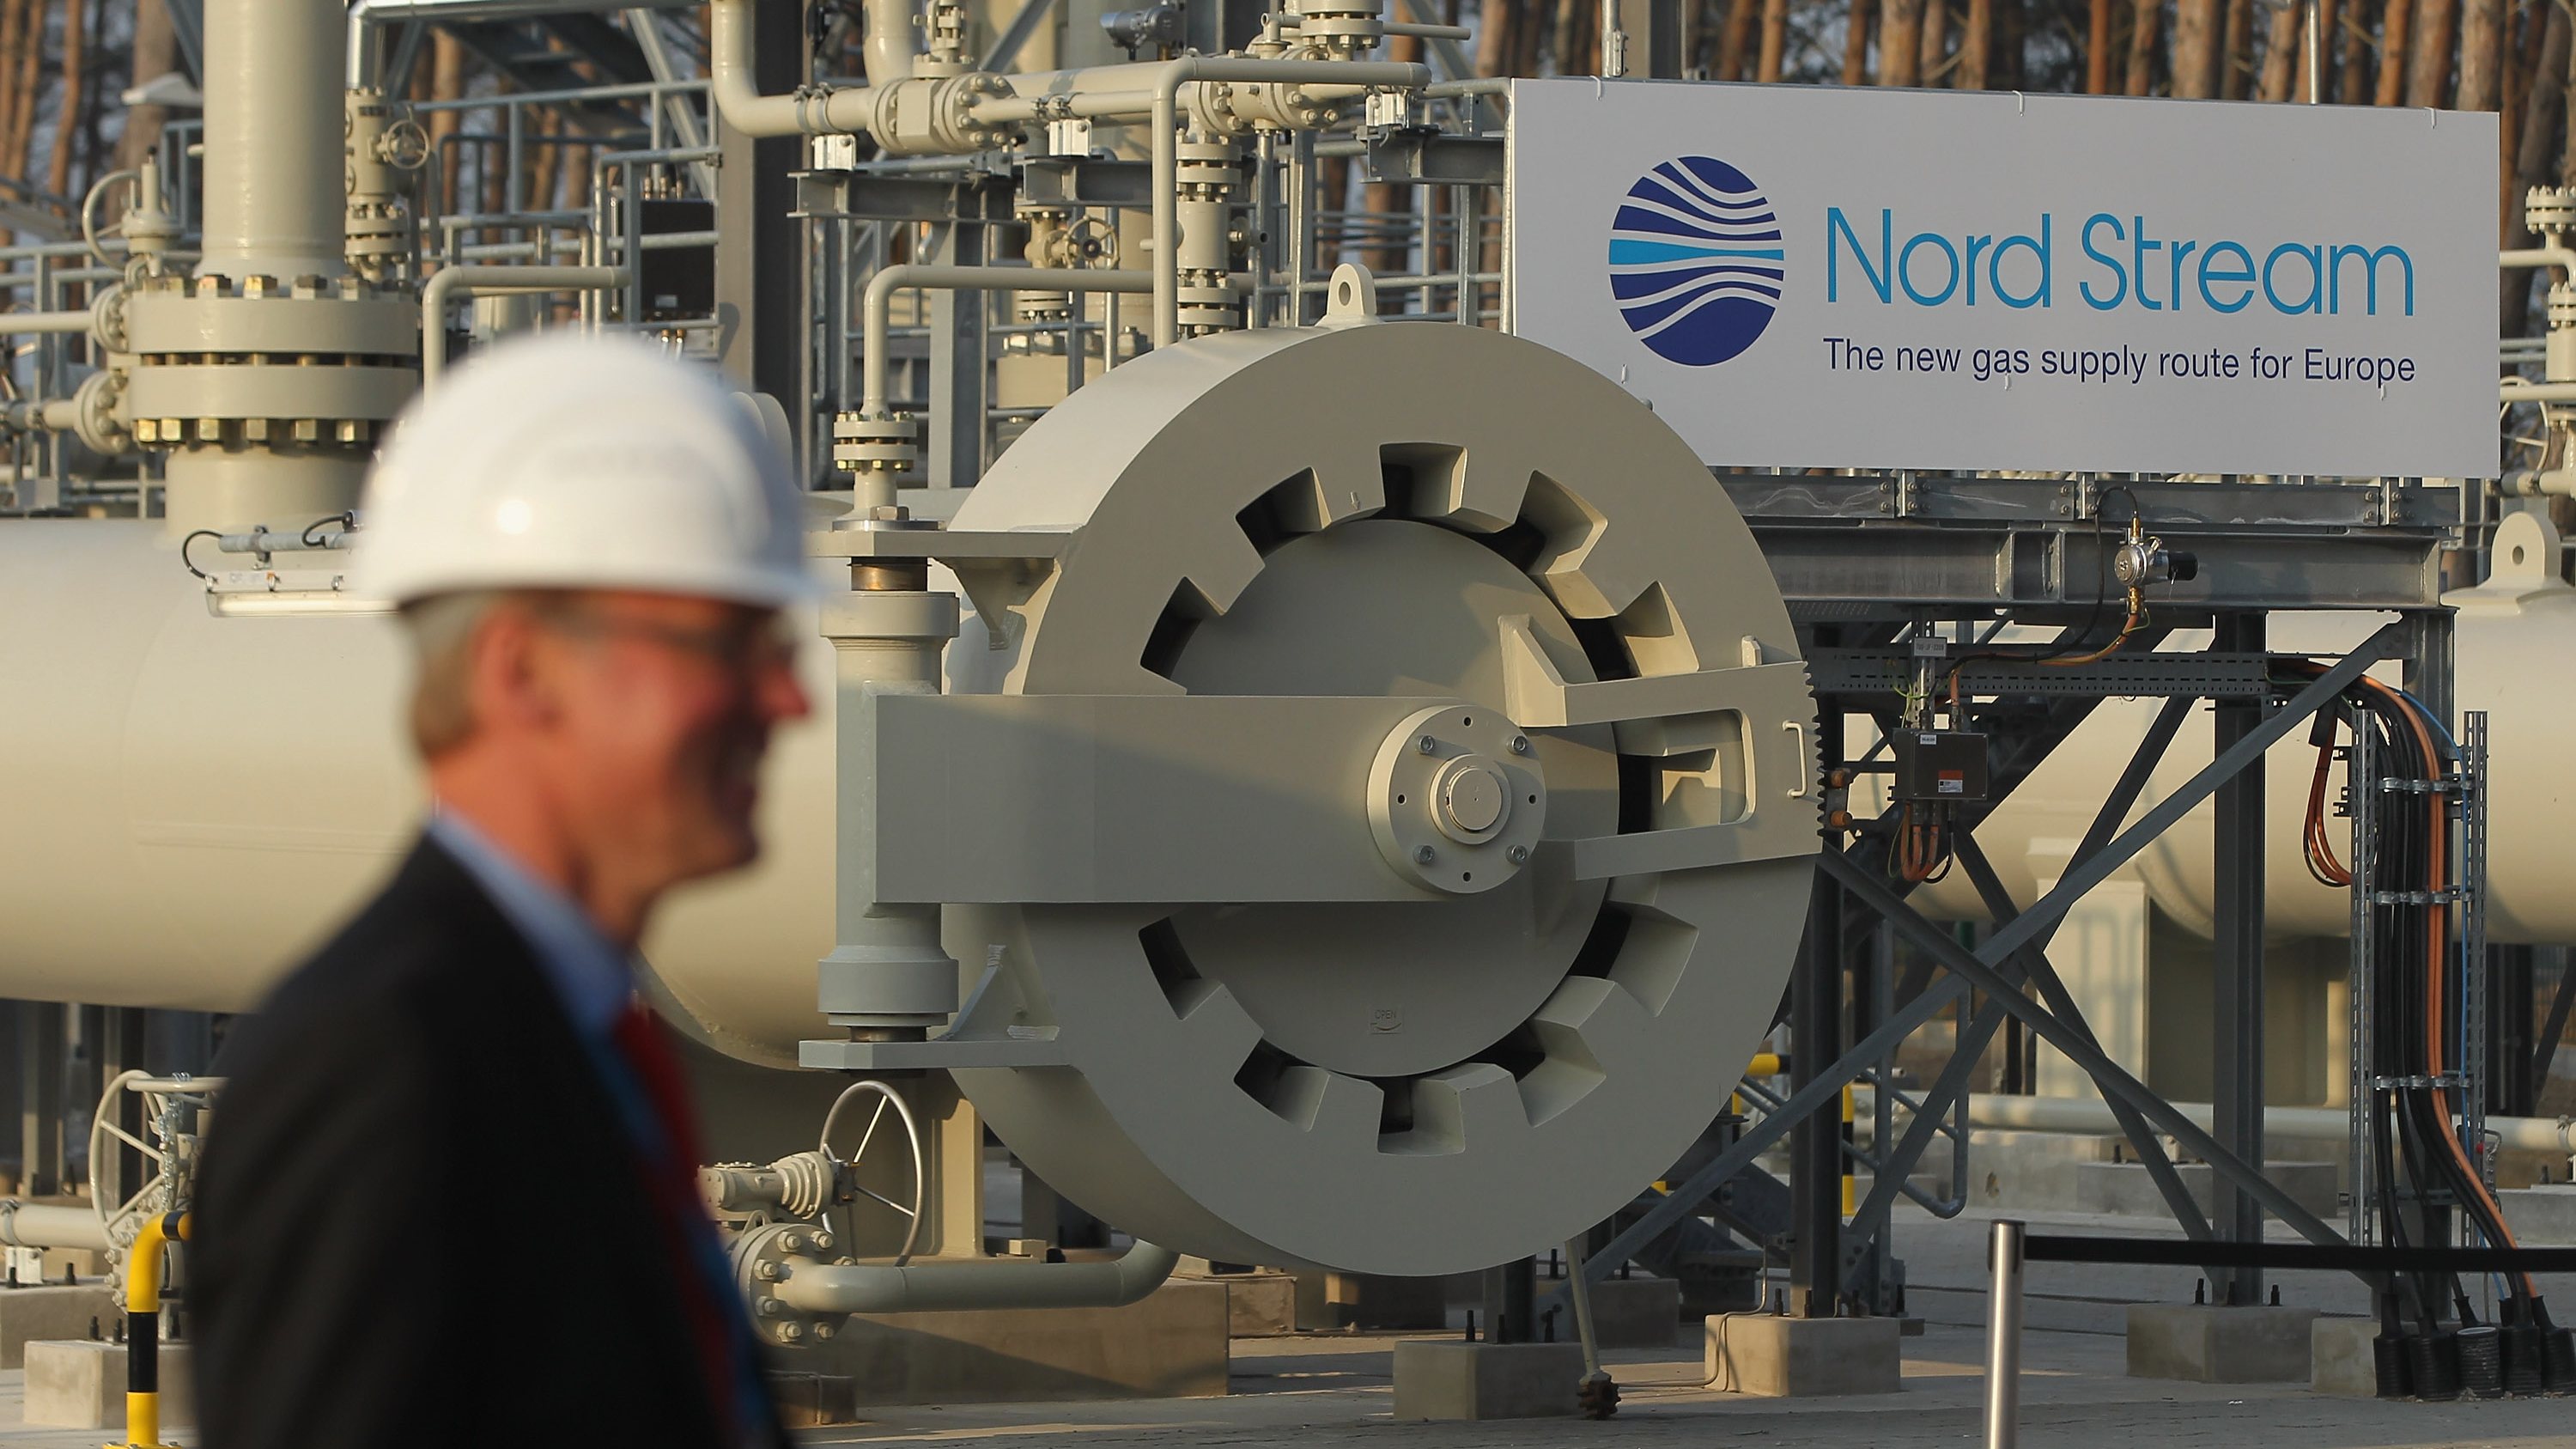 Merkel And Medvedev Inaugurate Nord Stream Gas Pipeline